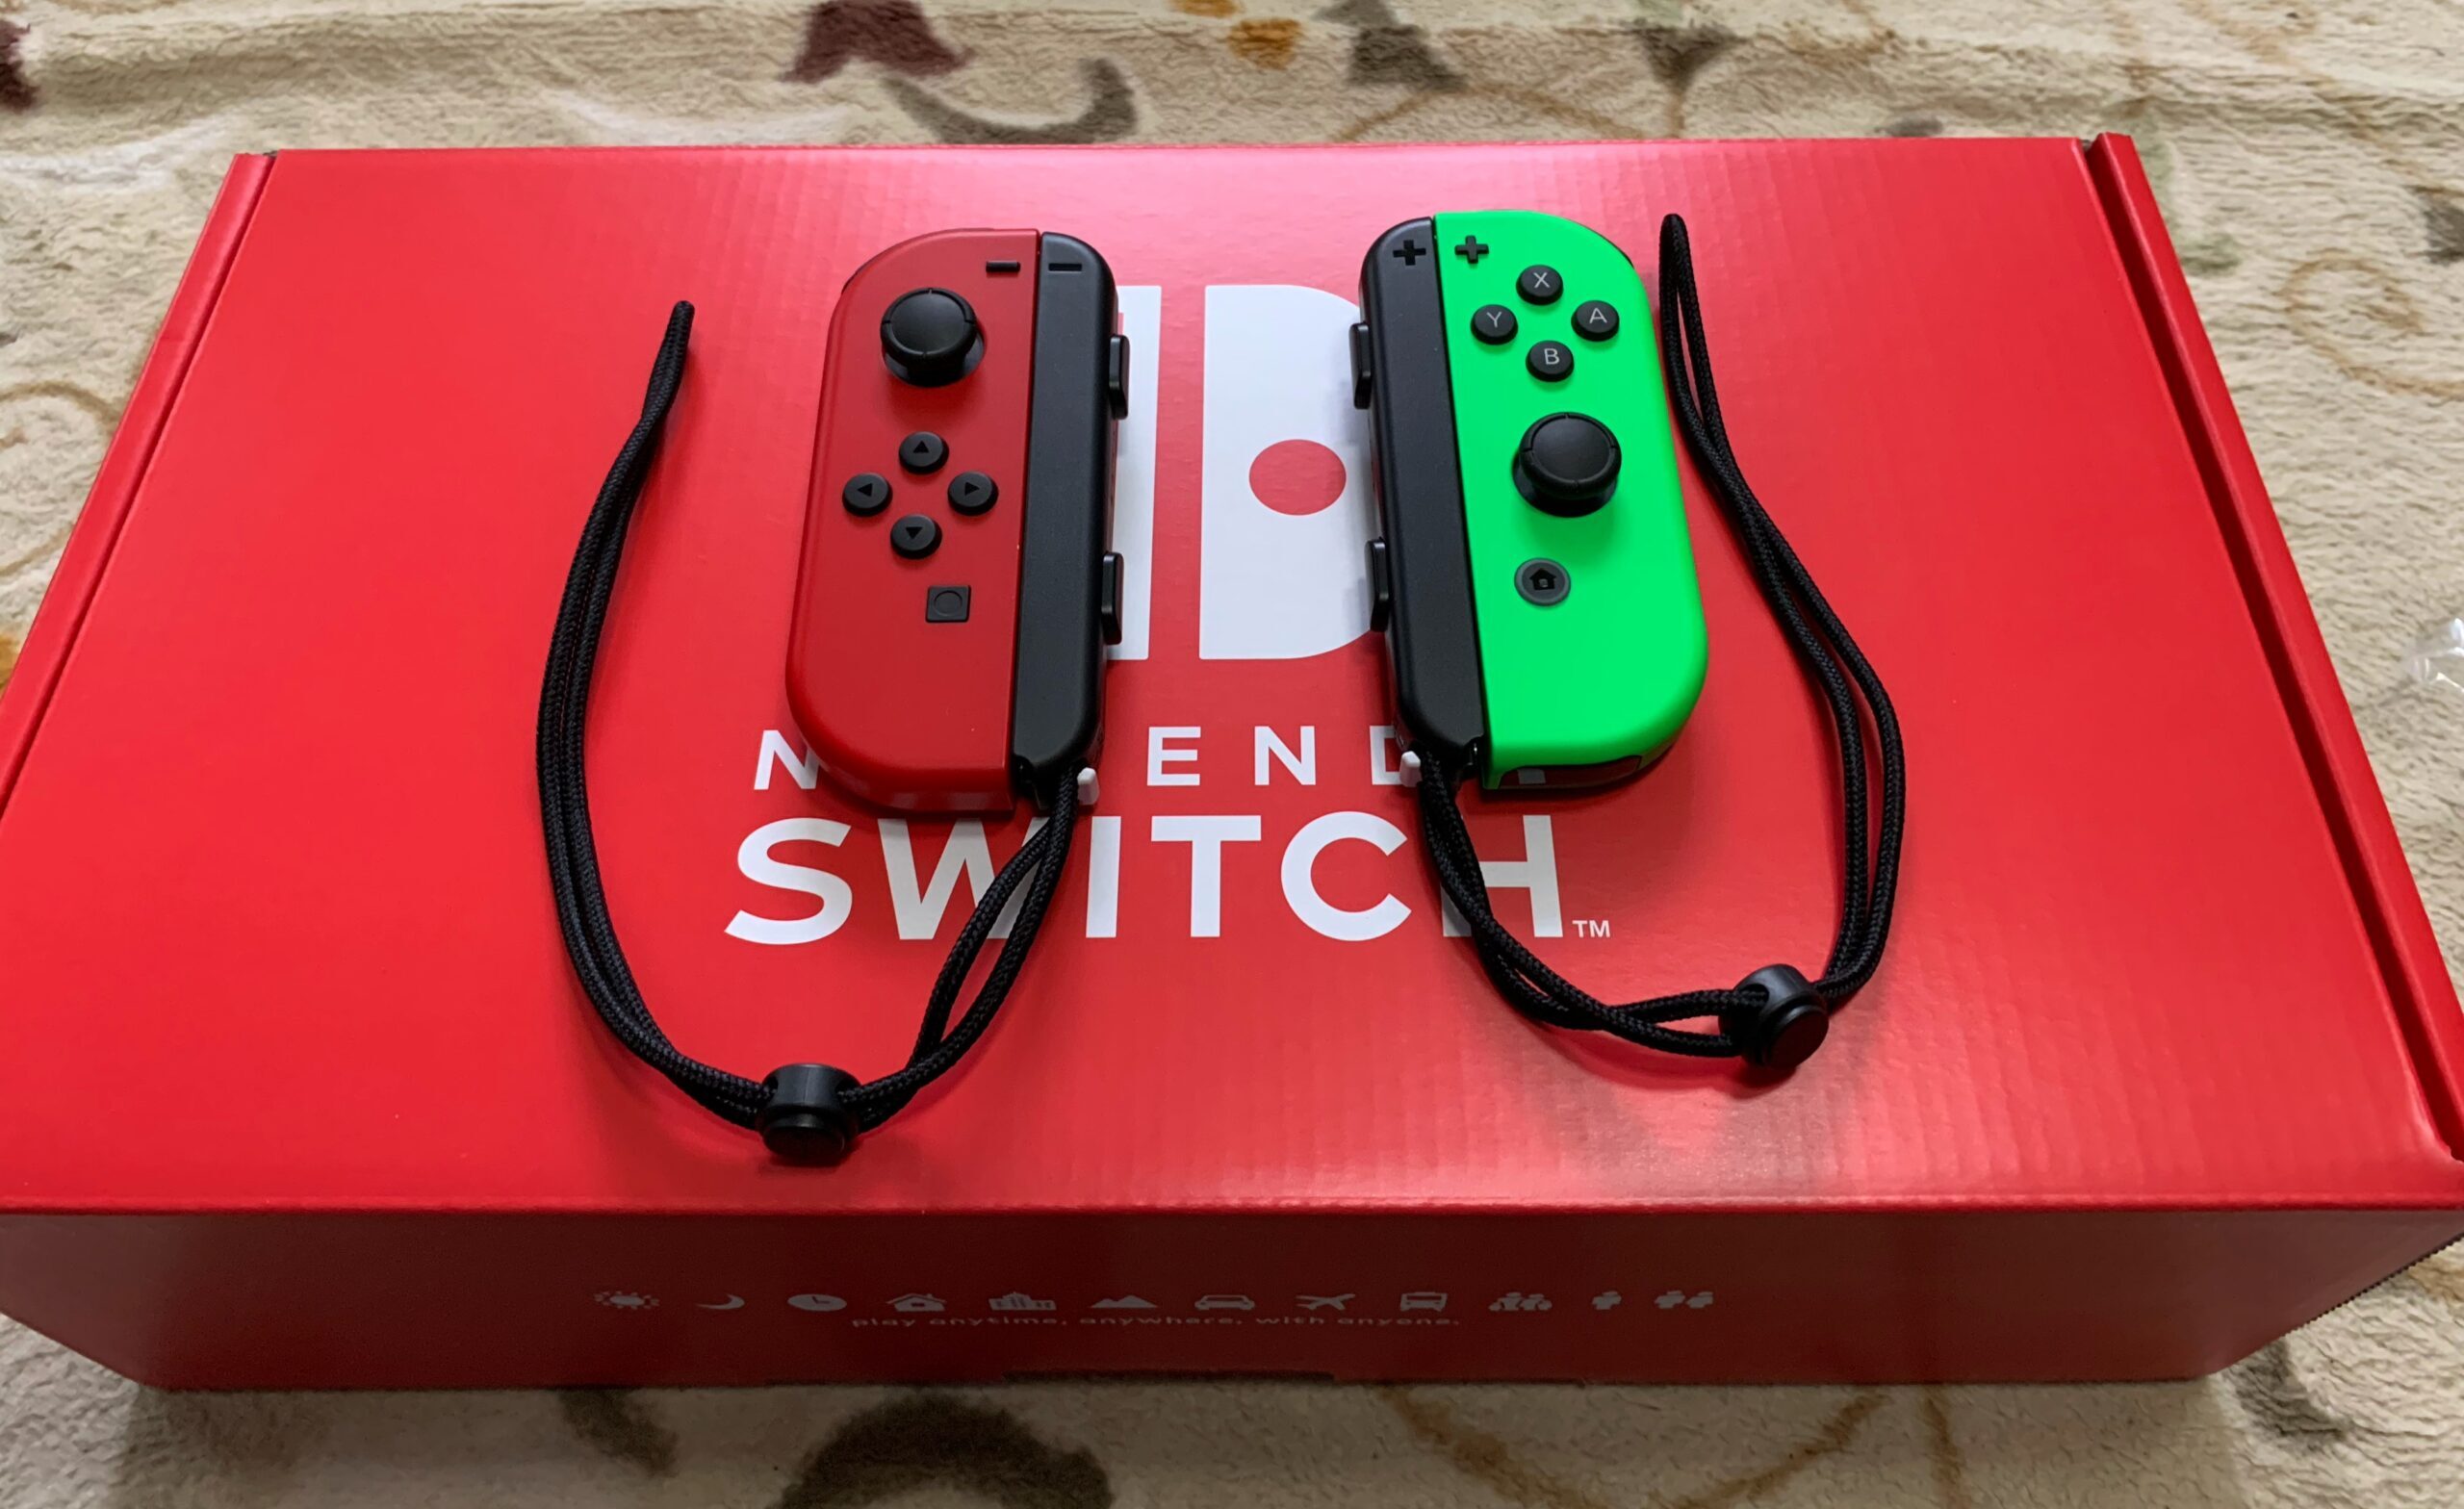 Nintendo Switch Customizeを購入したので、開封とレビューをします。